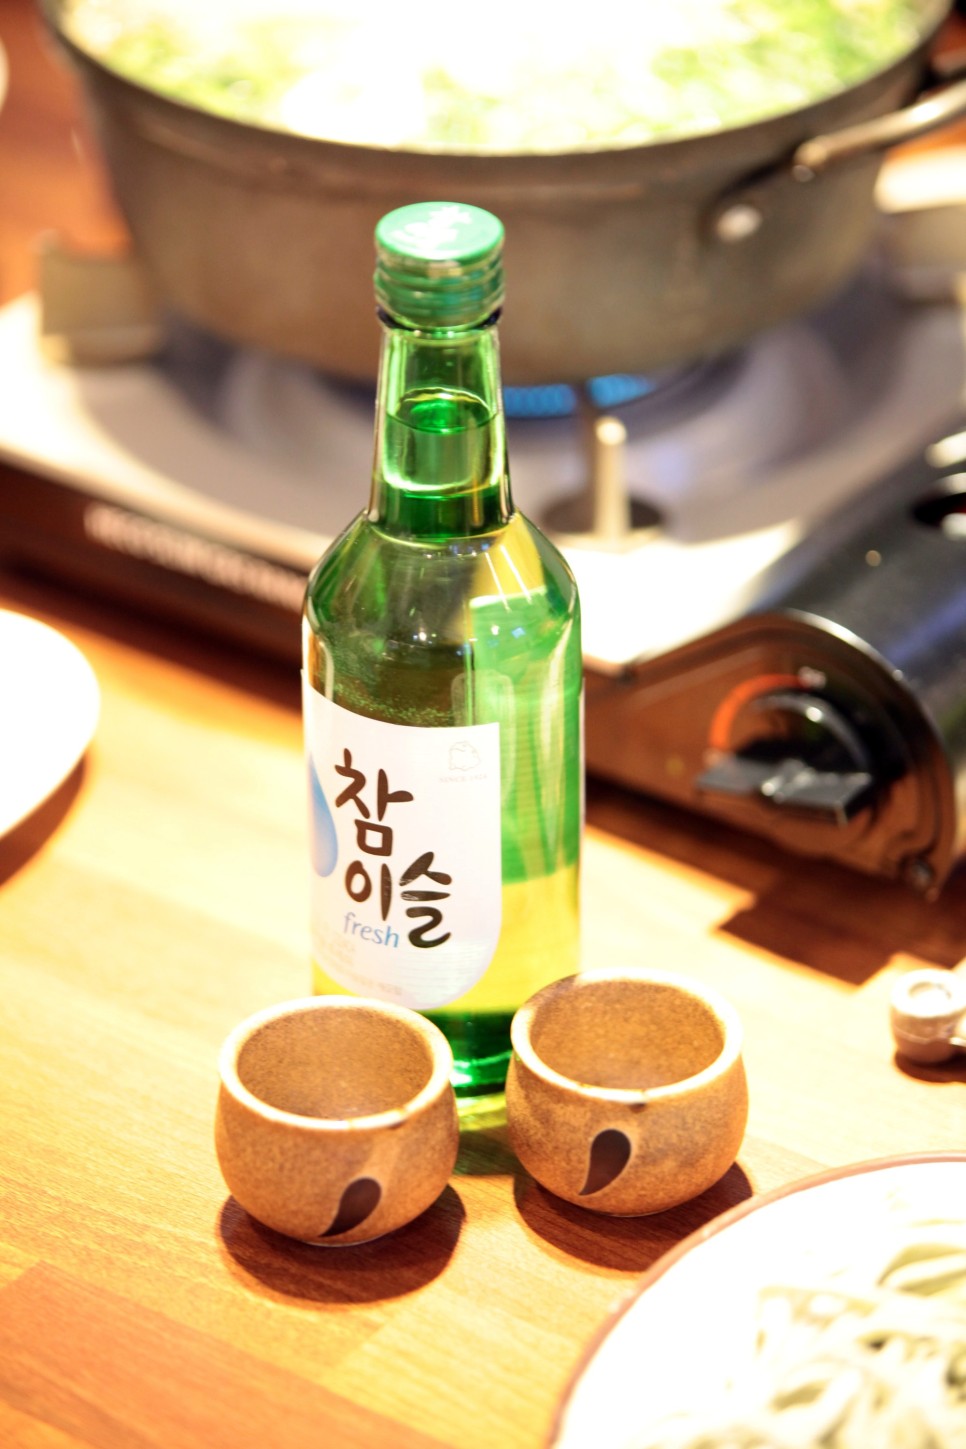 김포 한식 맛집 담구리샤브칼국수에서 가족모임